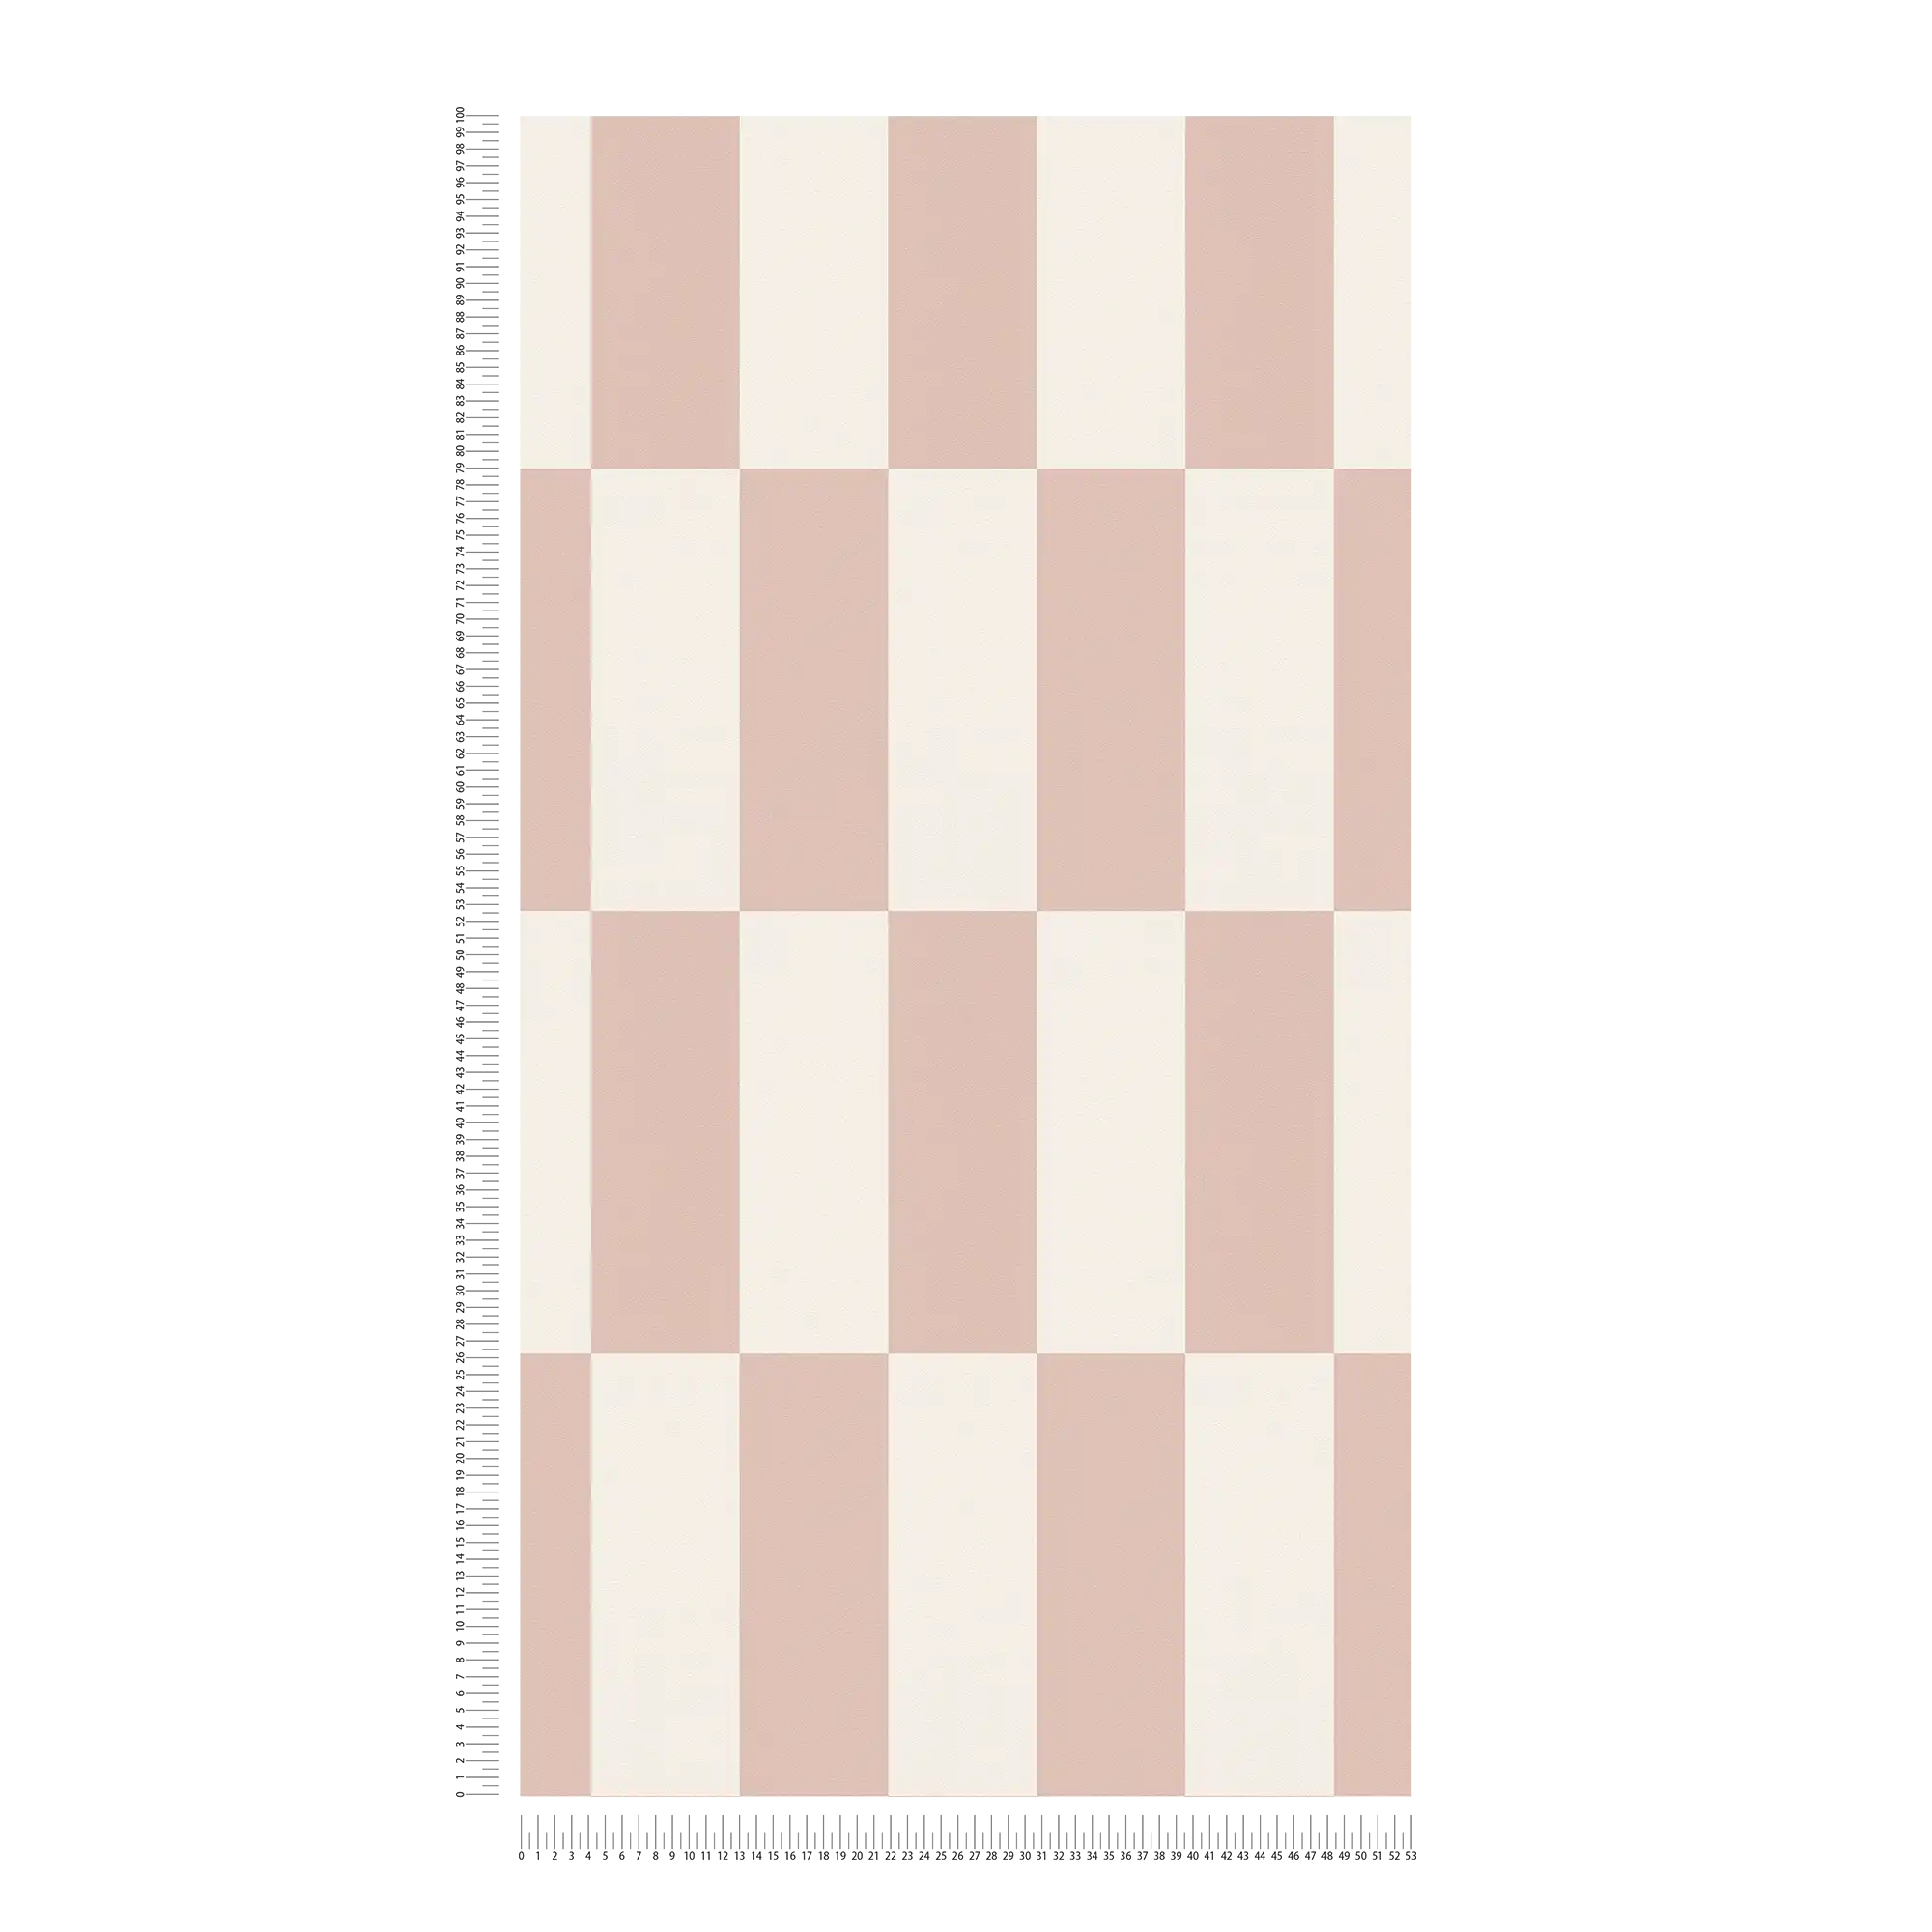             Patroonbehang met vierkantjes grafisch patroon - taupe, wit
        